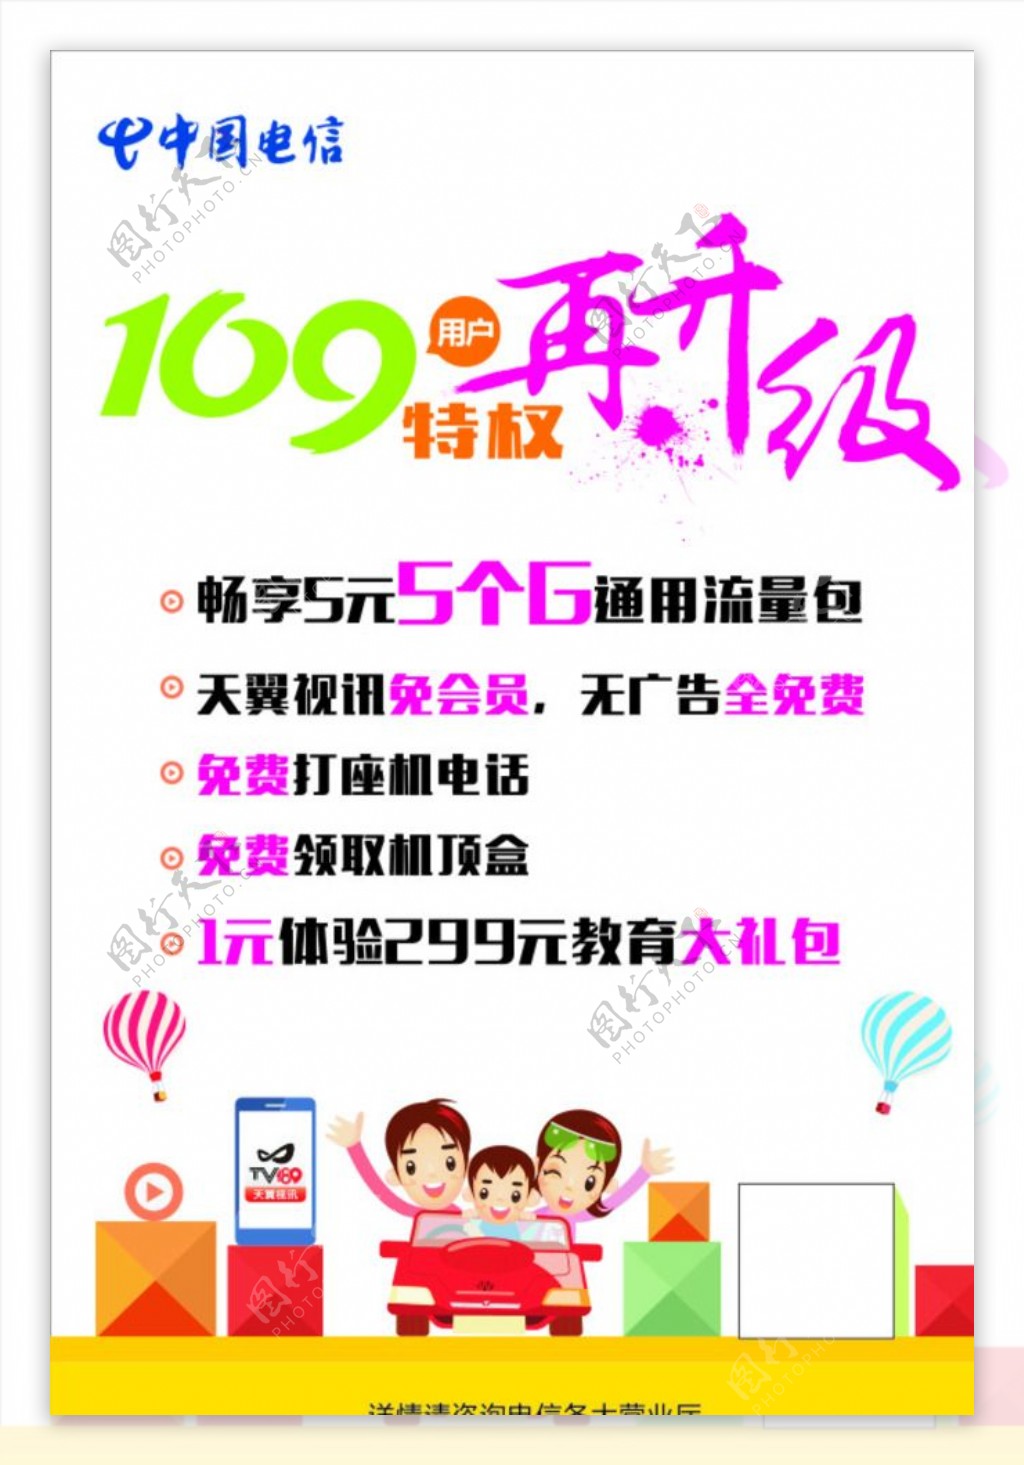 中国电信169用户